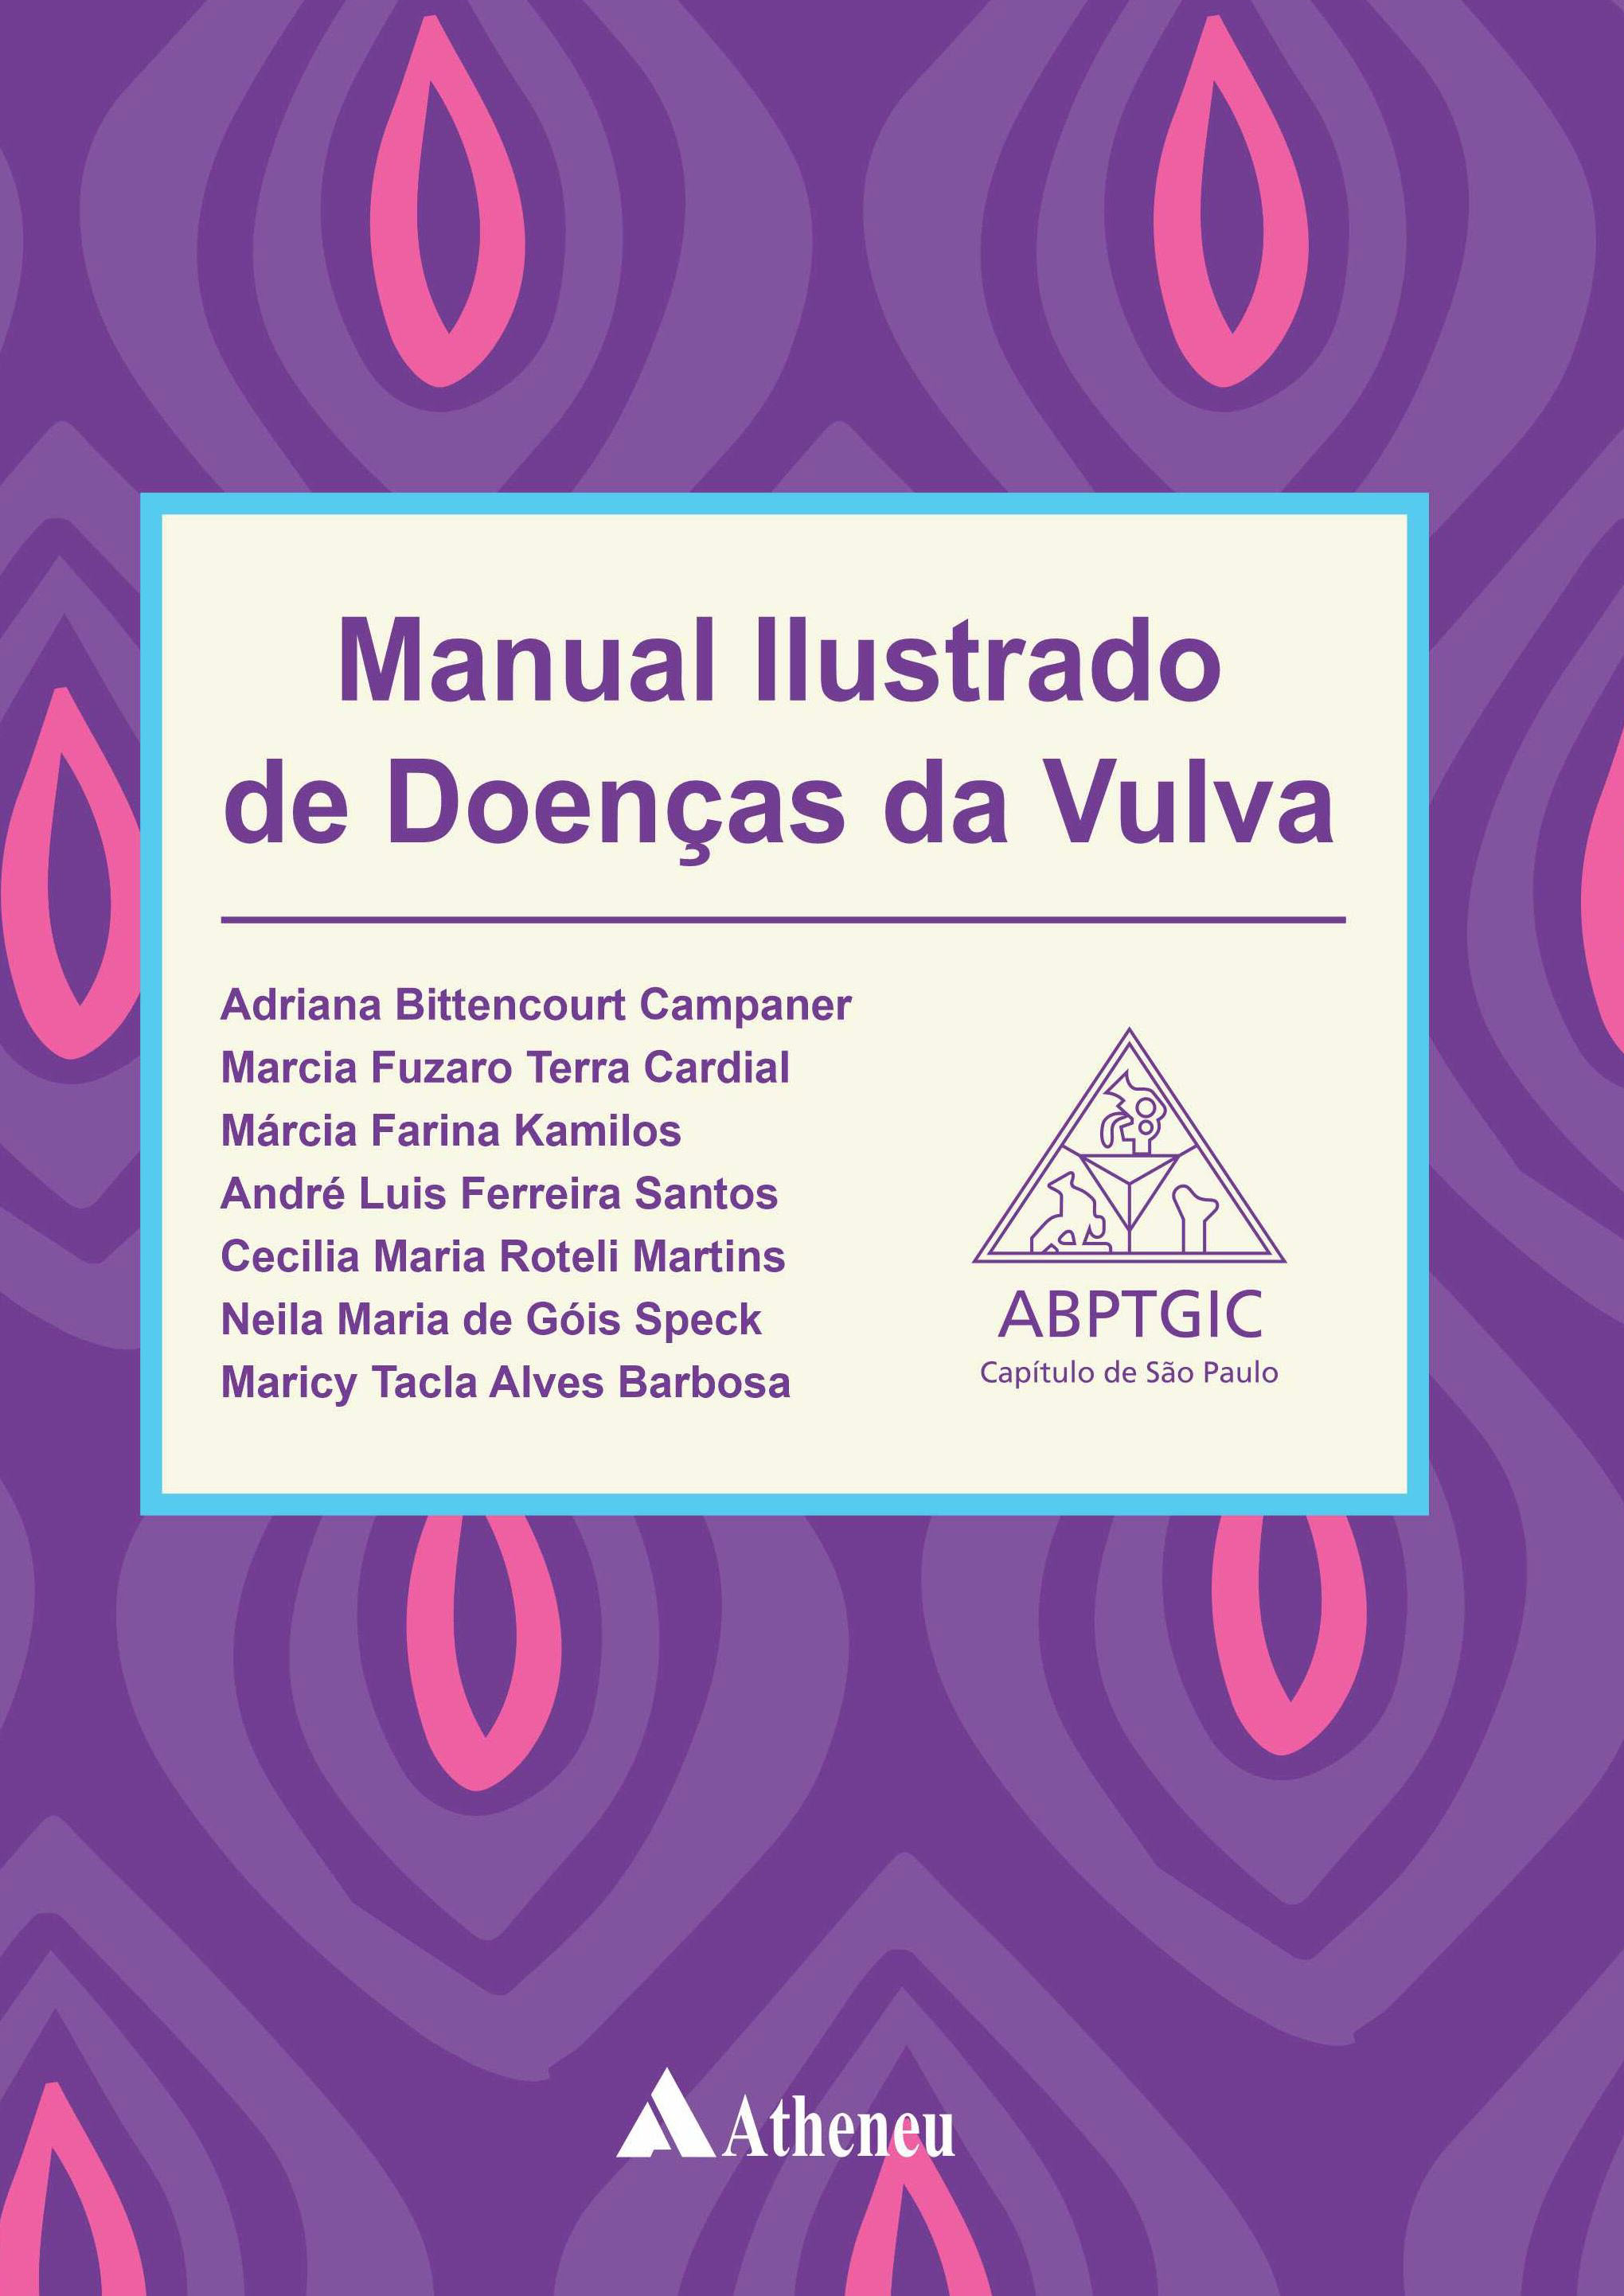 Manual Ilustrado de Doenças da Vulva